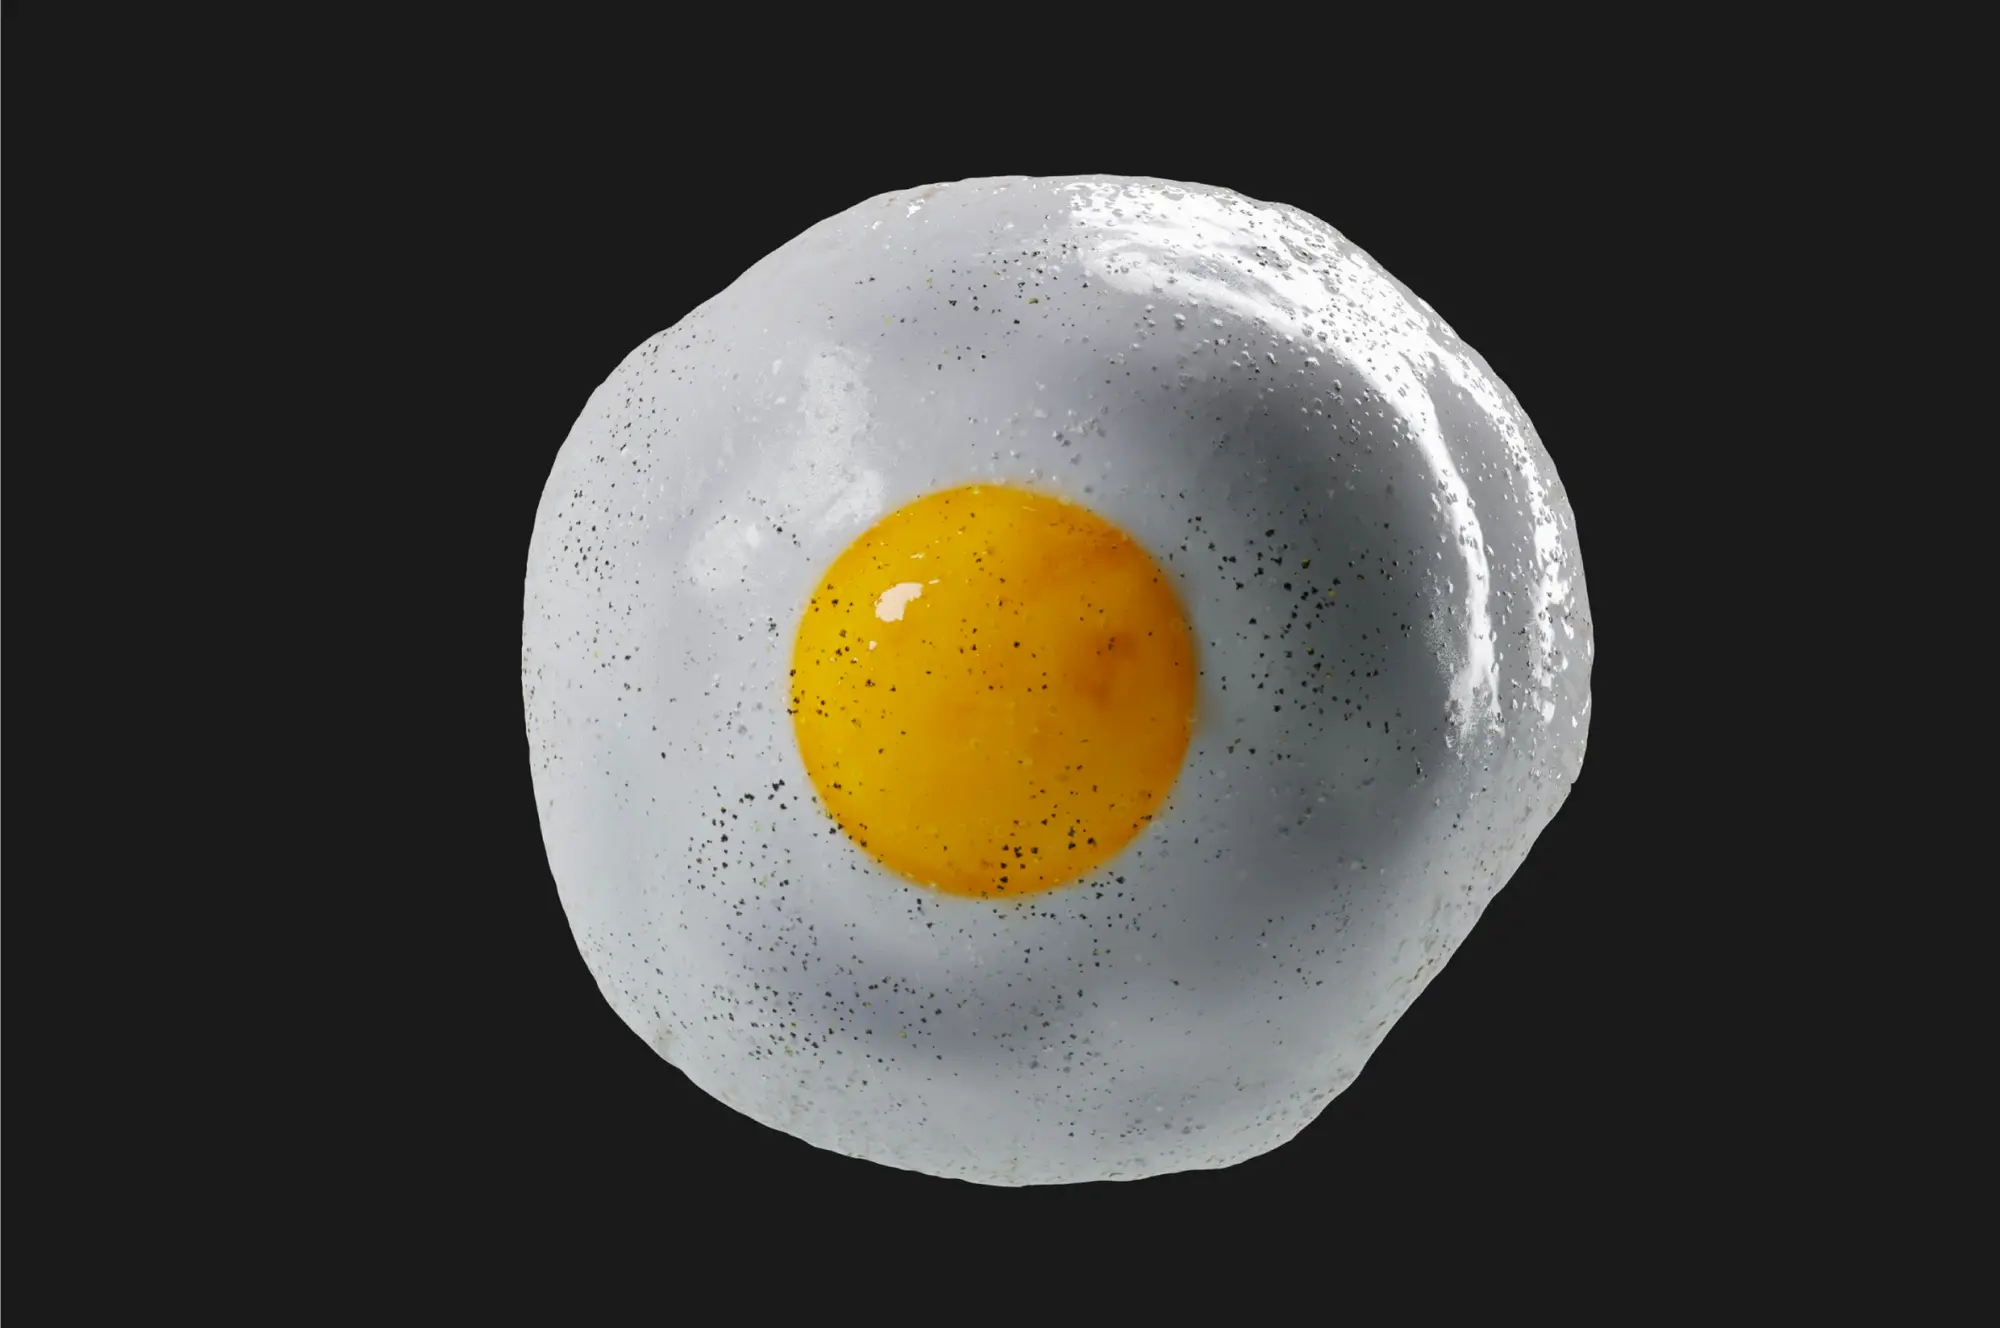 Imagen 3D de un huevo frito sobre fondo negro